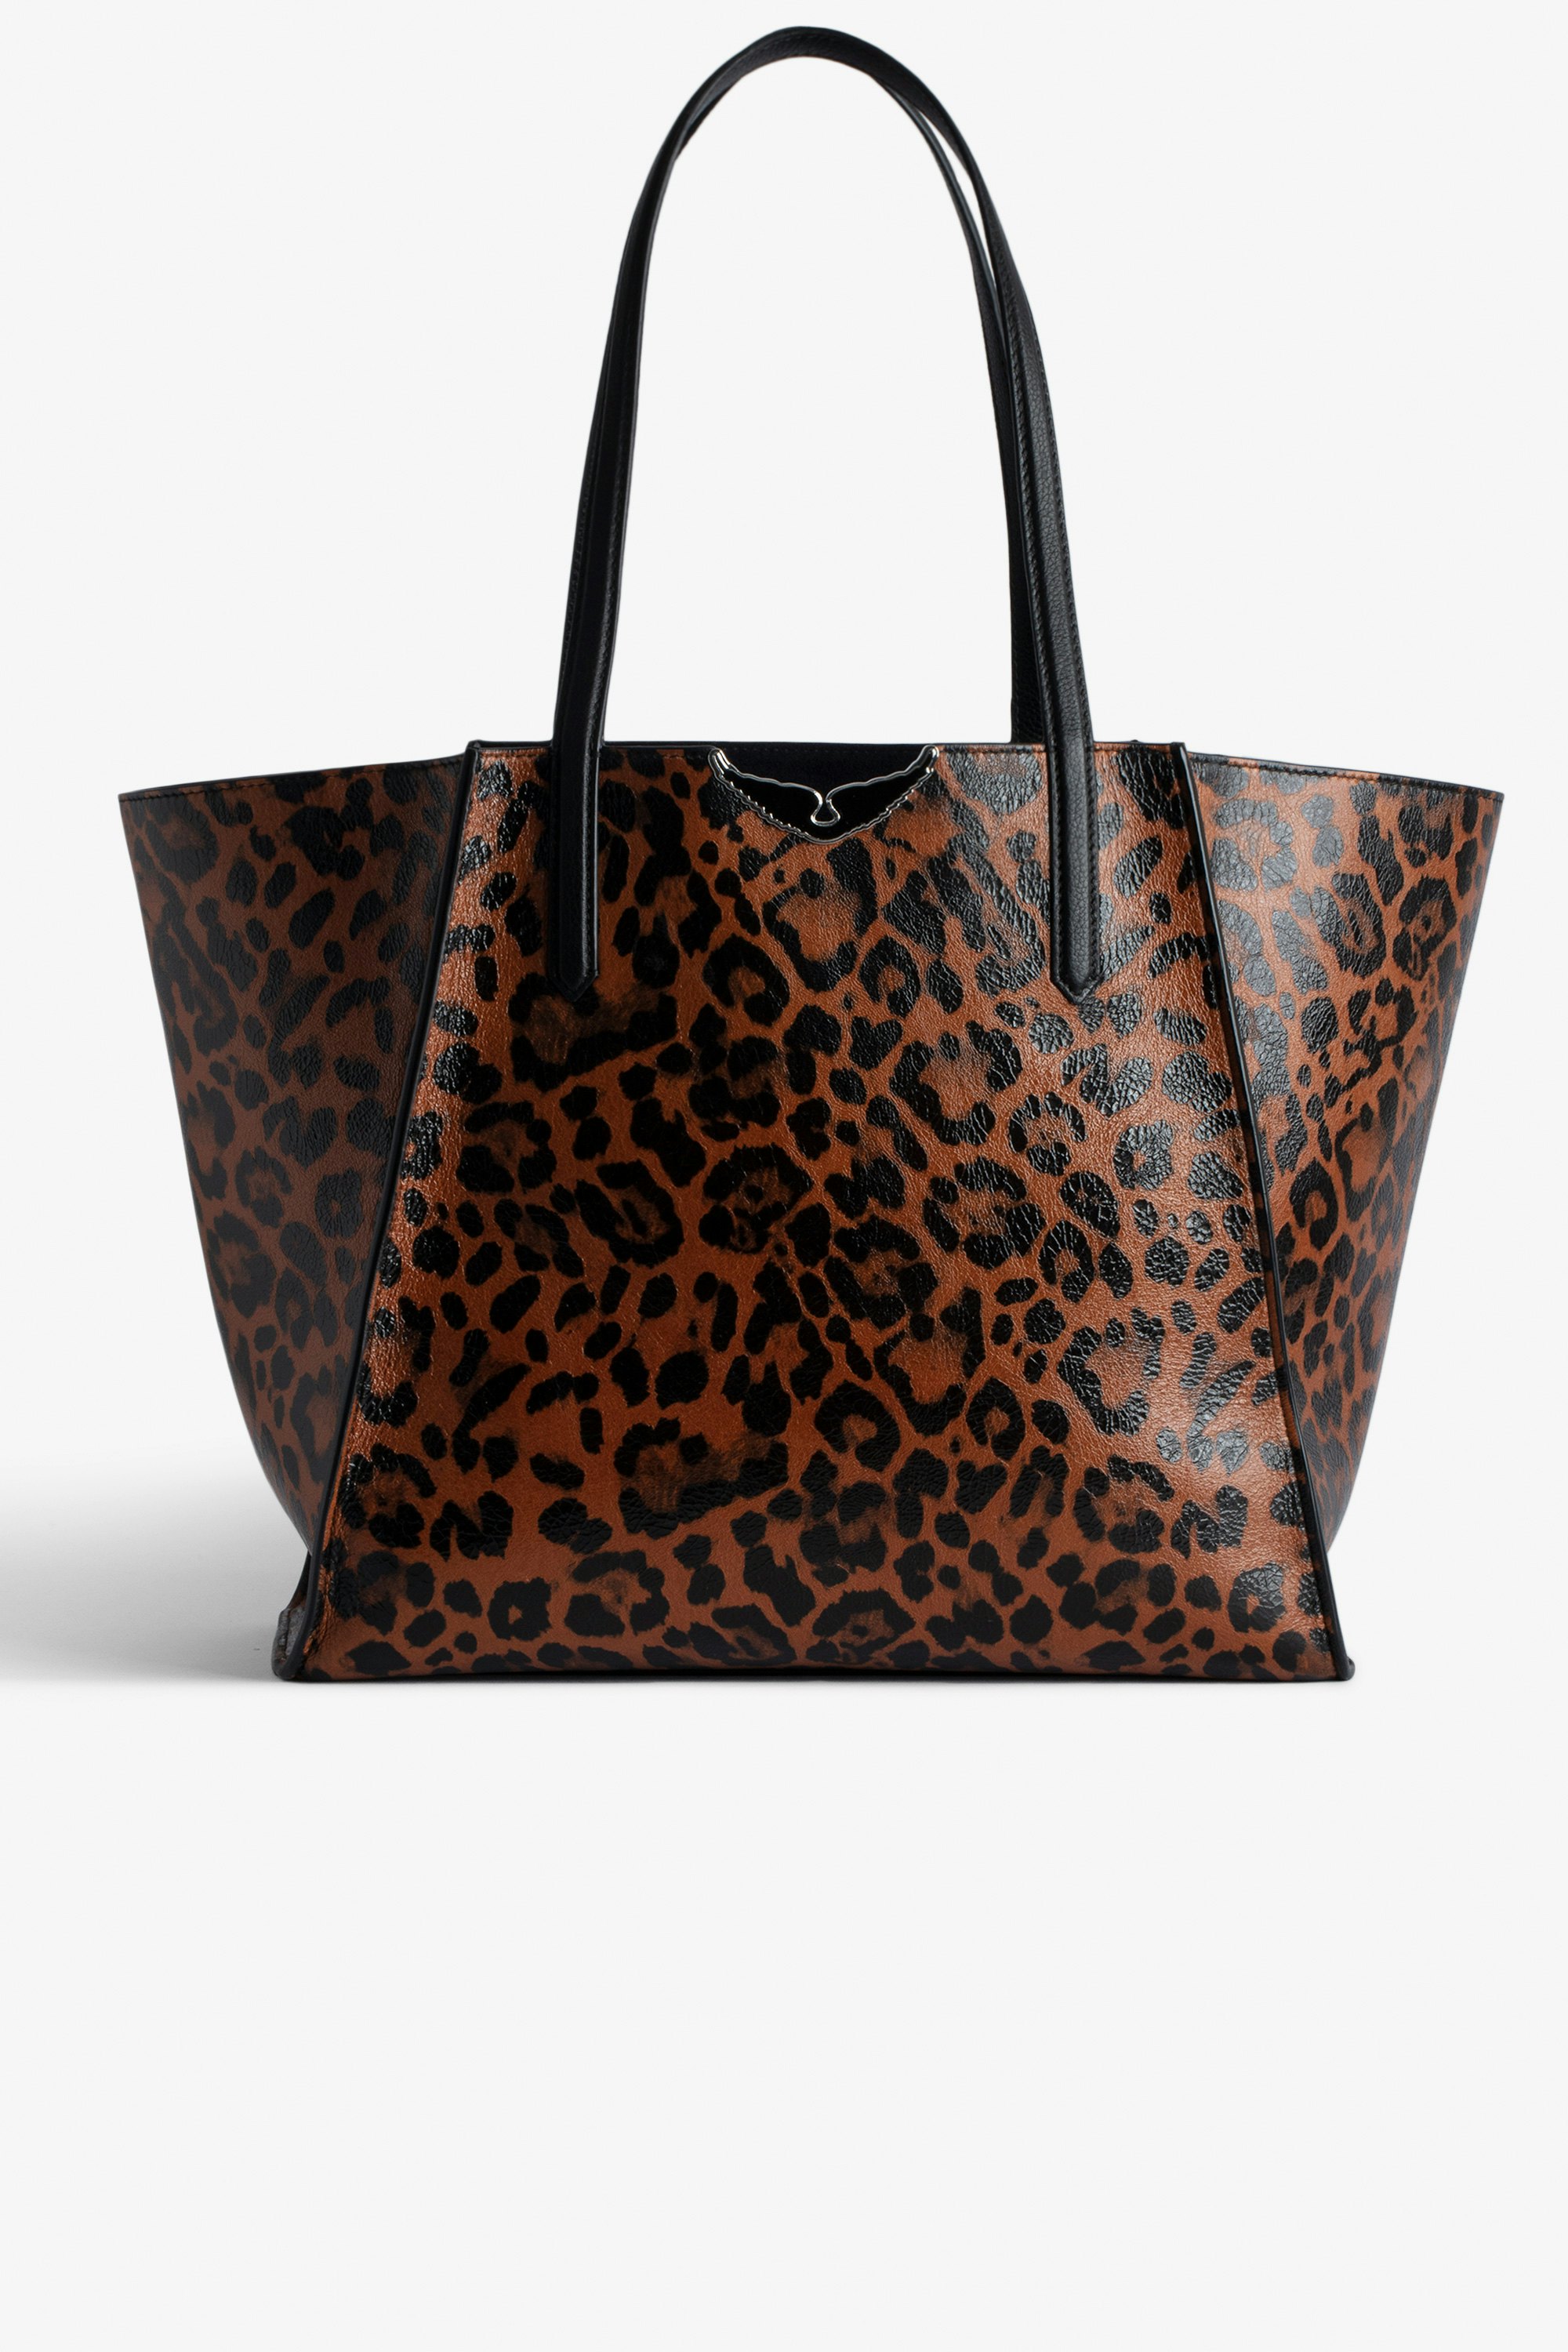 Bolso Le Borderline Leopardo - Bolso tote reversible marrón de piel brillante con estampado de leopardo con asa metálica y alas para mujer.